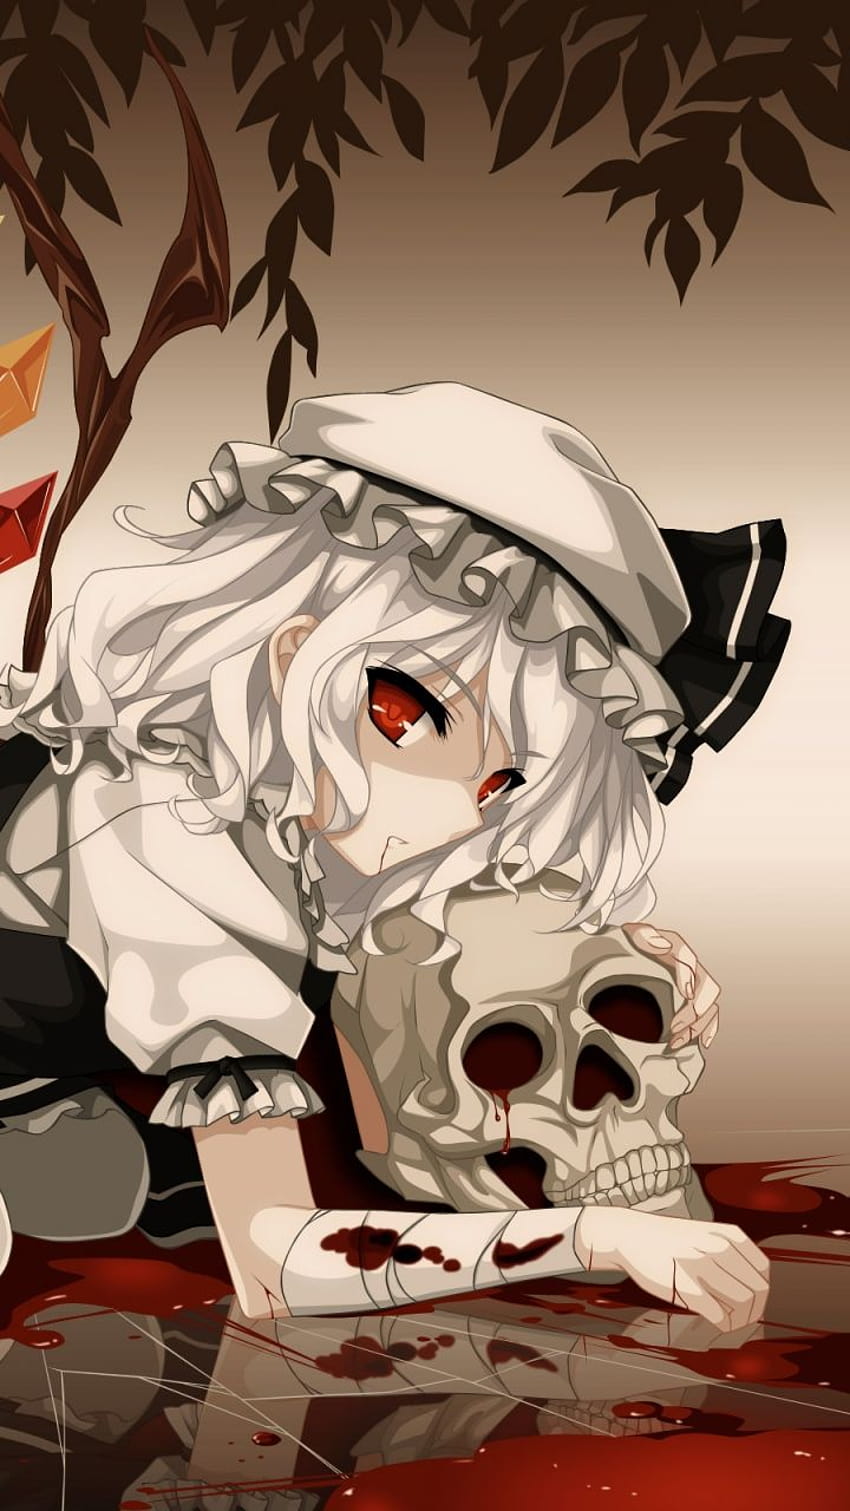 Anime girl skeletons by Barukurii on DeviantArt